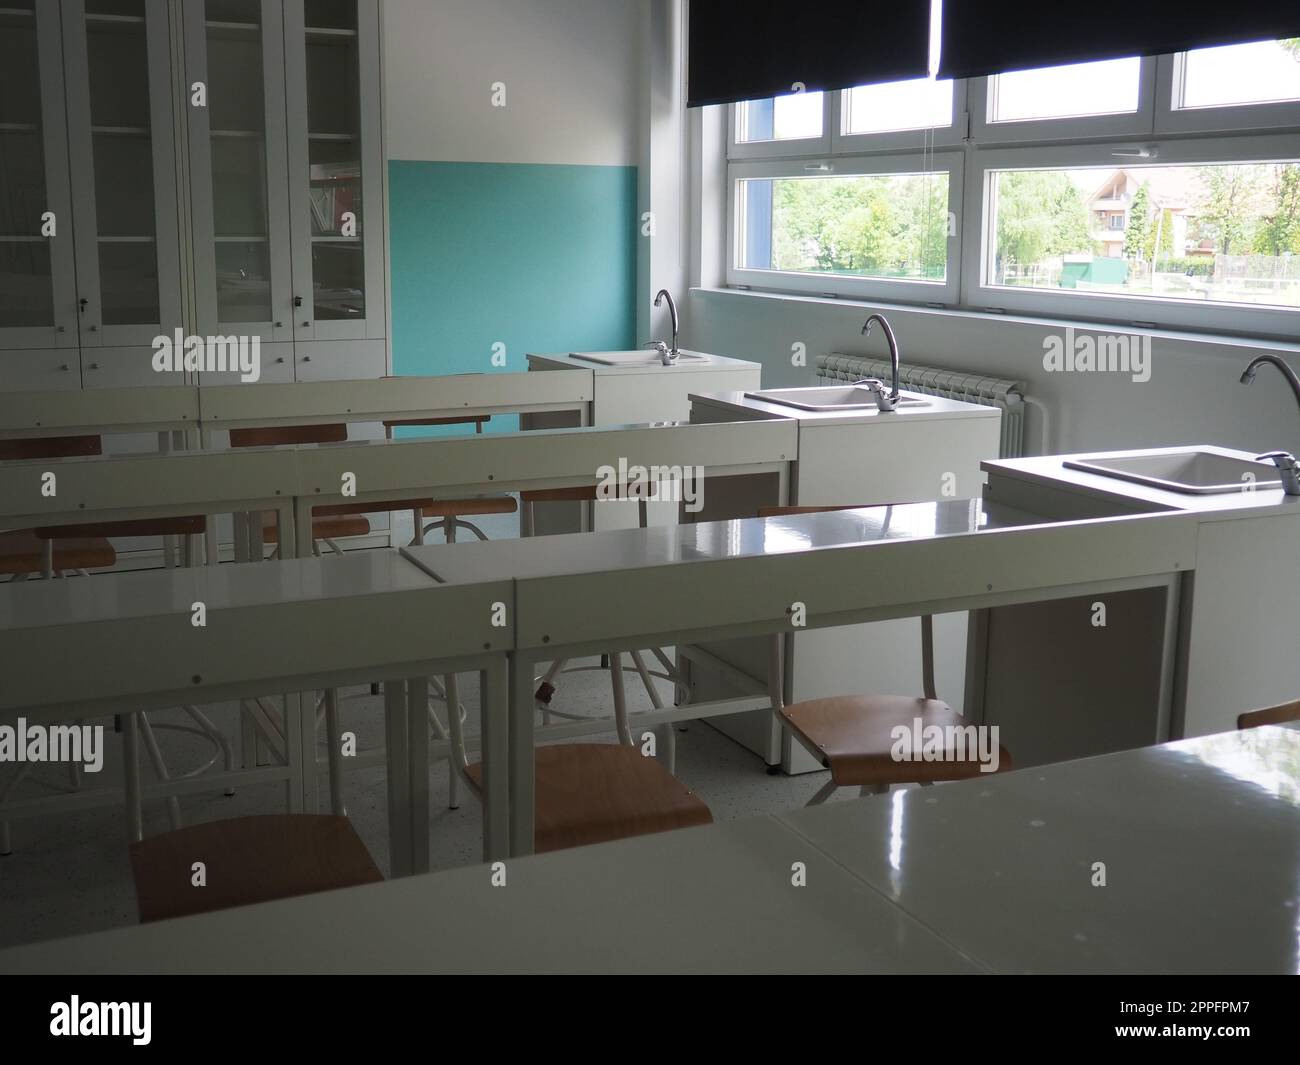 Chemiezimmer in einer modernen neuen Schule. Wunderschöne weiße Möbel mit Waschbecken und Waschbecken. Große Fenster mit Verdunkelungsvorhängen oder Jalousien. Leeres Klassenzimmer. Möbel und Schulausstattung Stockfoto